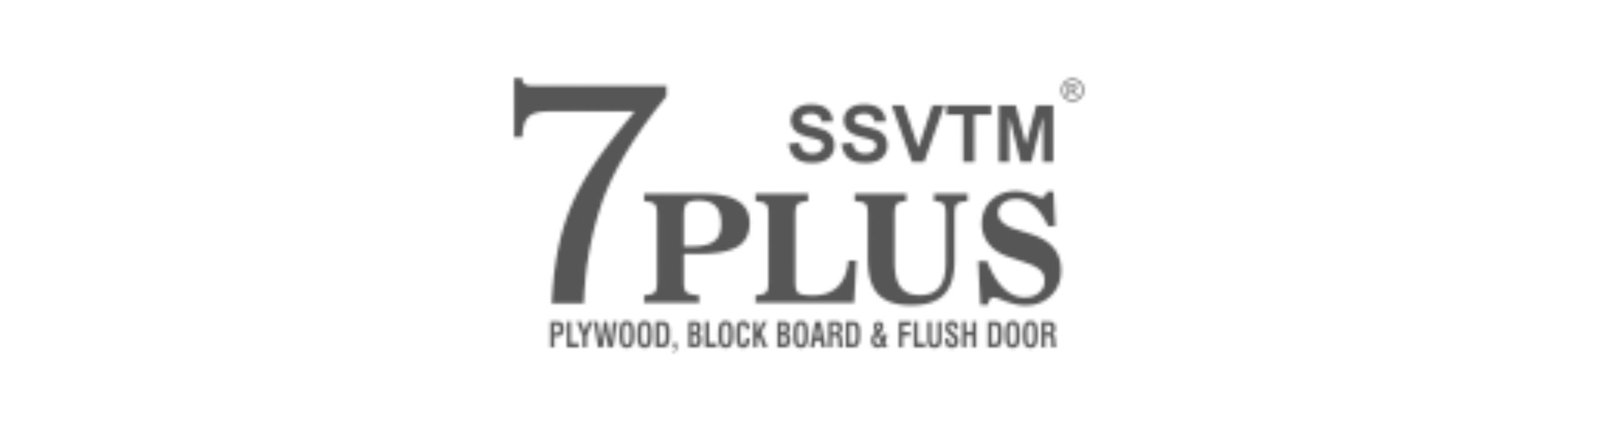 SSVTM logo 10